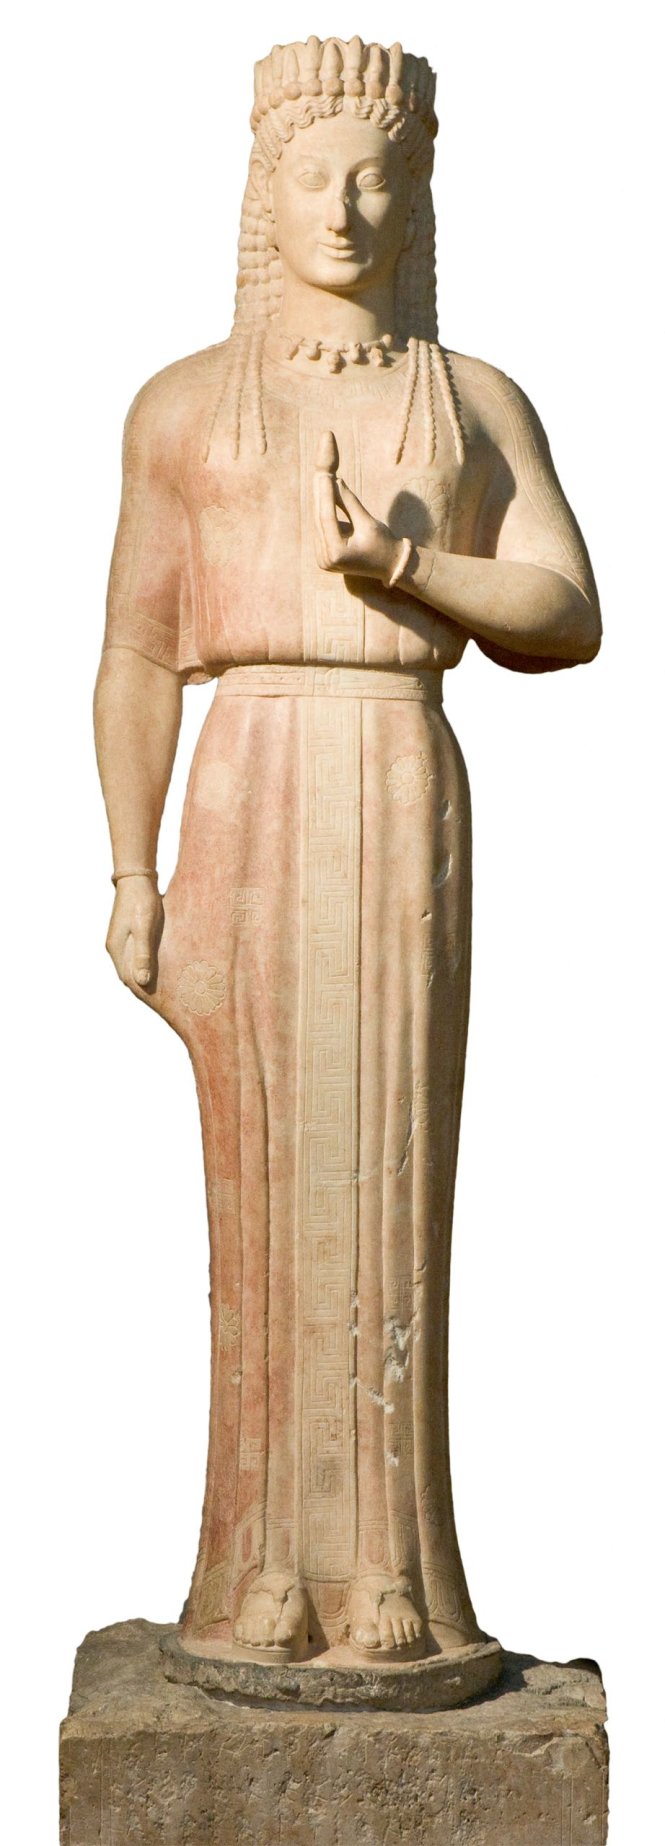 Tượng Phrasikleia Kore (Hy Lạp, thế kỷ 6 TCN). Ảnh: Liebieghaus Skulpturensammlung